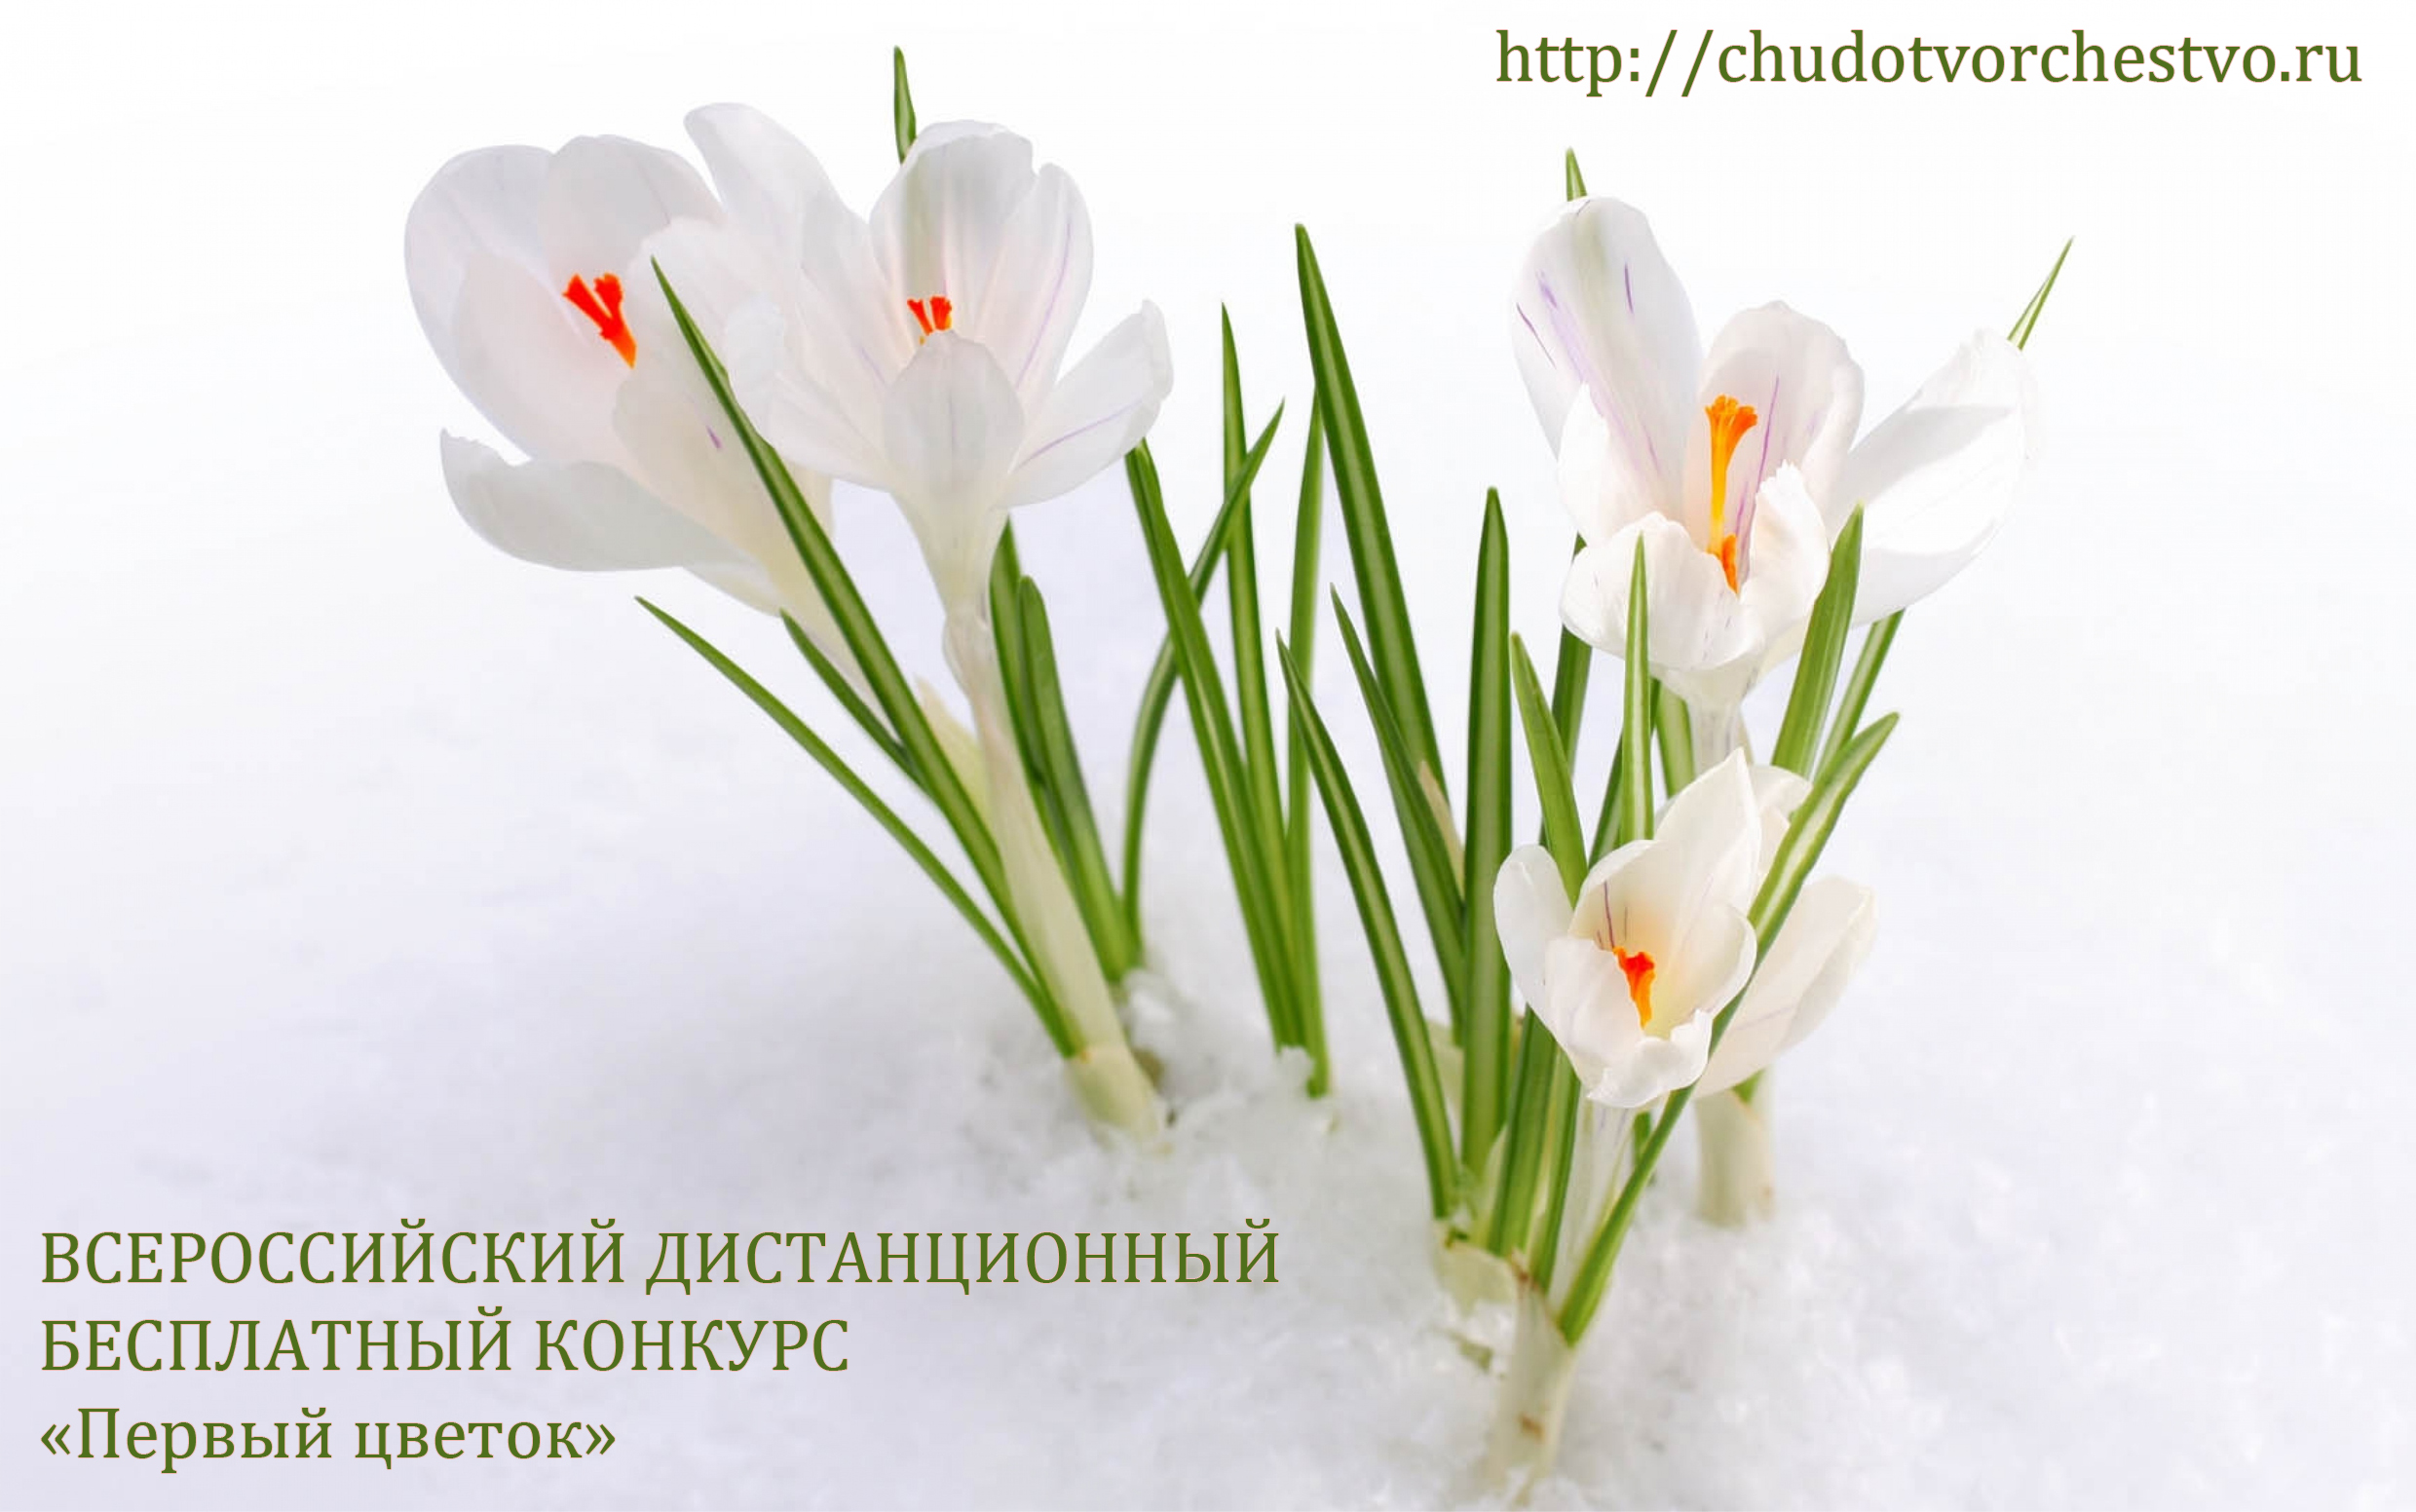 Всероссийский дистанционный бесплатный конкурс «Первый цветок»